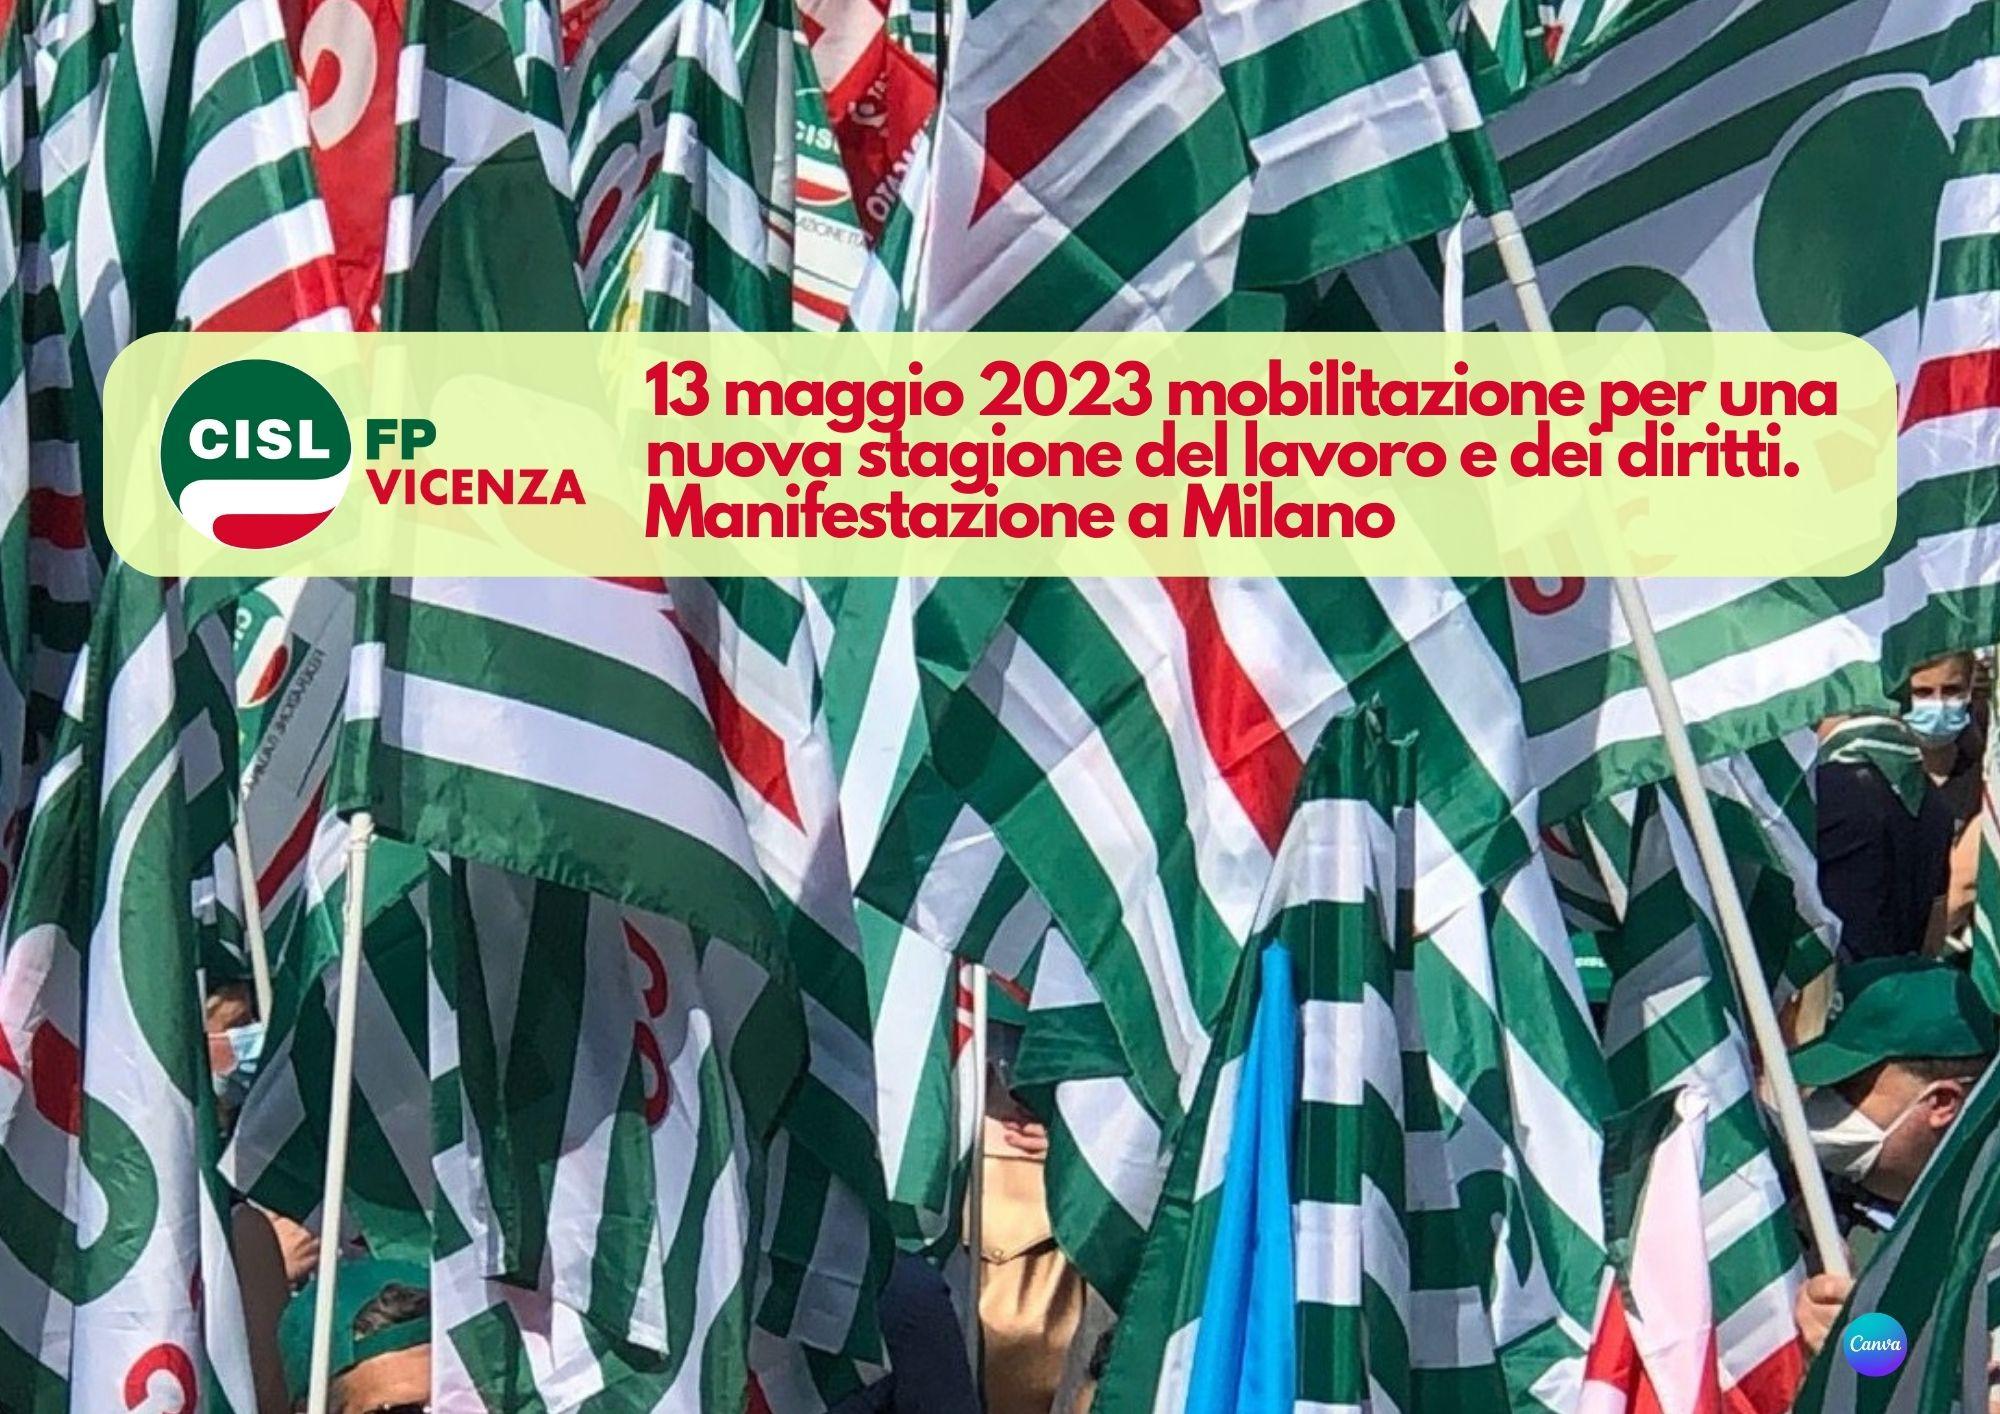 CISL FP Vicenza. Manifestazione a Milano 13 maggio 2023 per una nuova stagione del lavoro e dei diritti